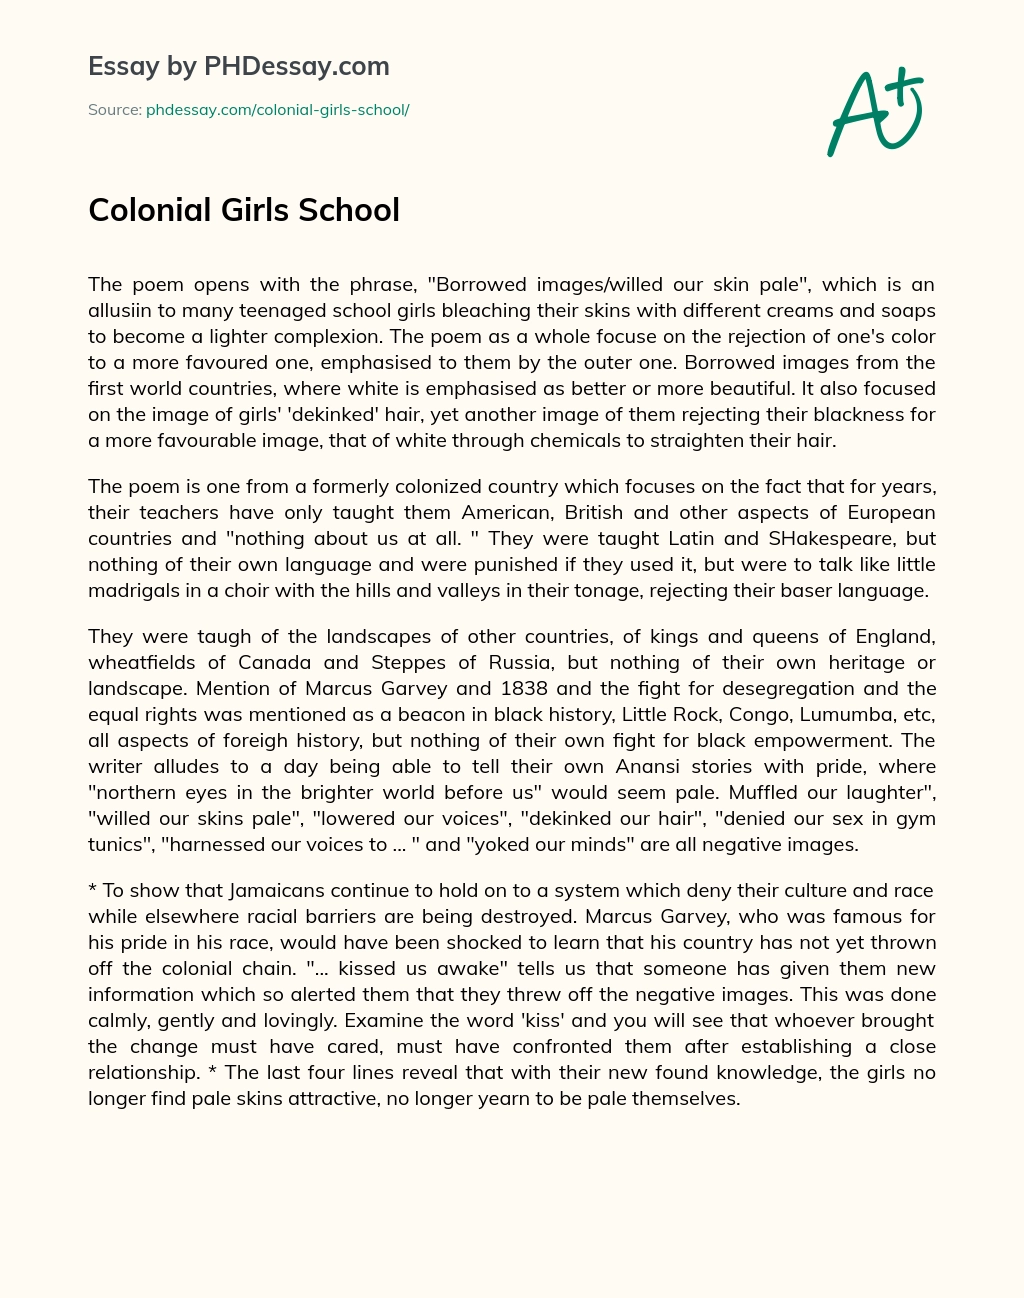 Colonial Girls School essay